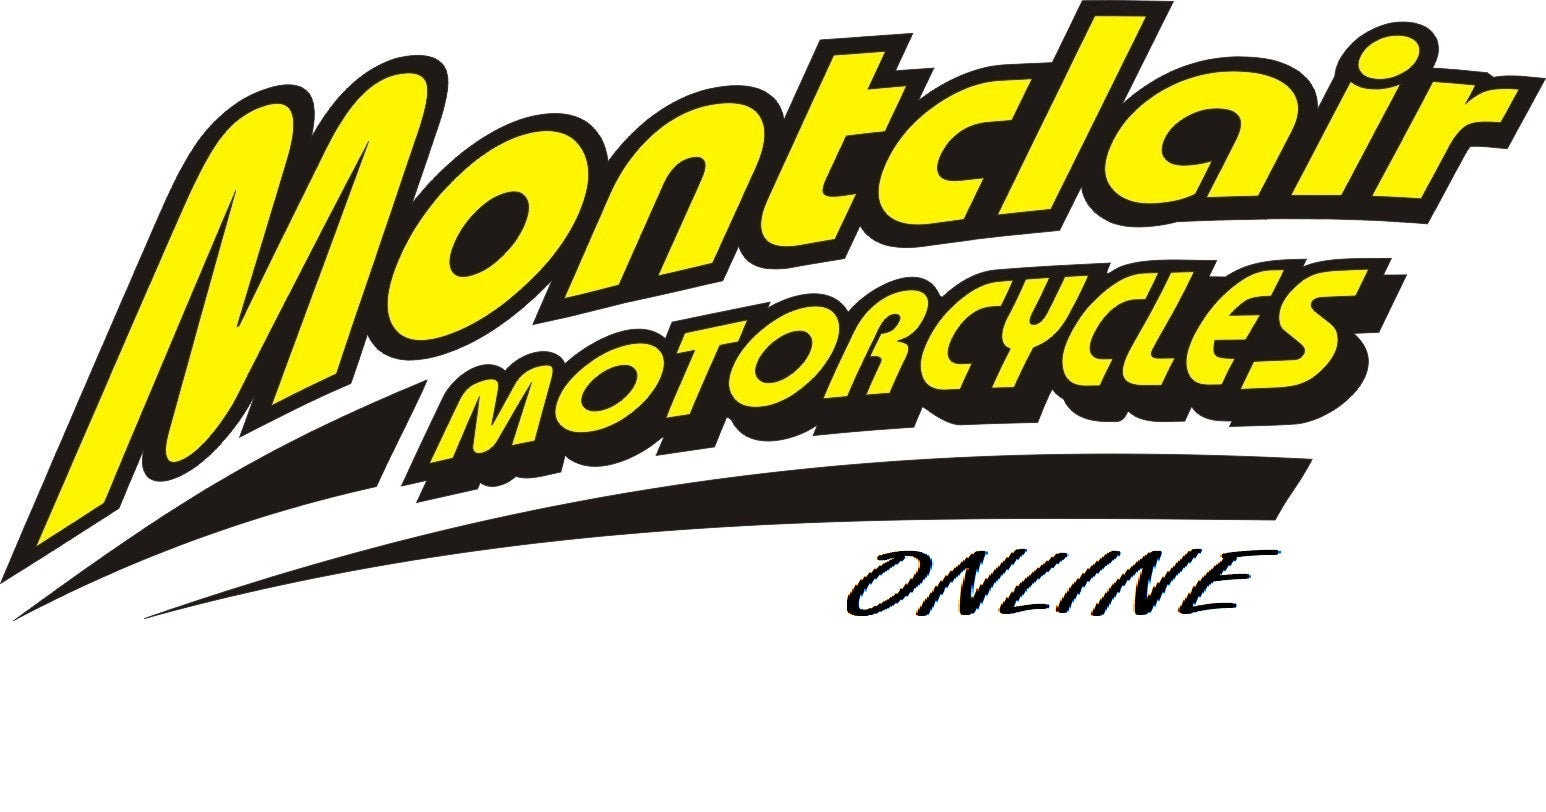 www.montclairmotorcycles.co.za